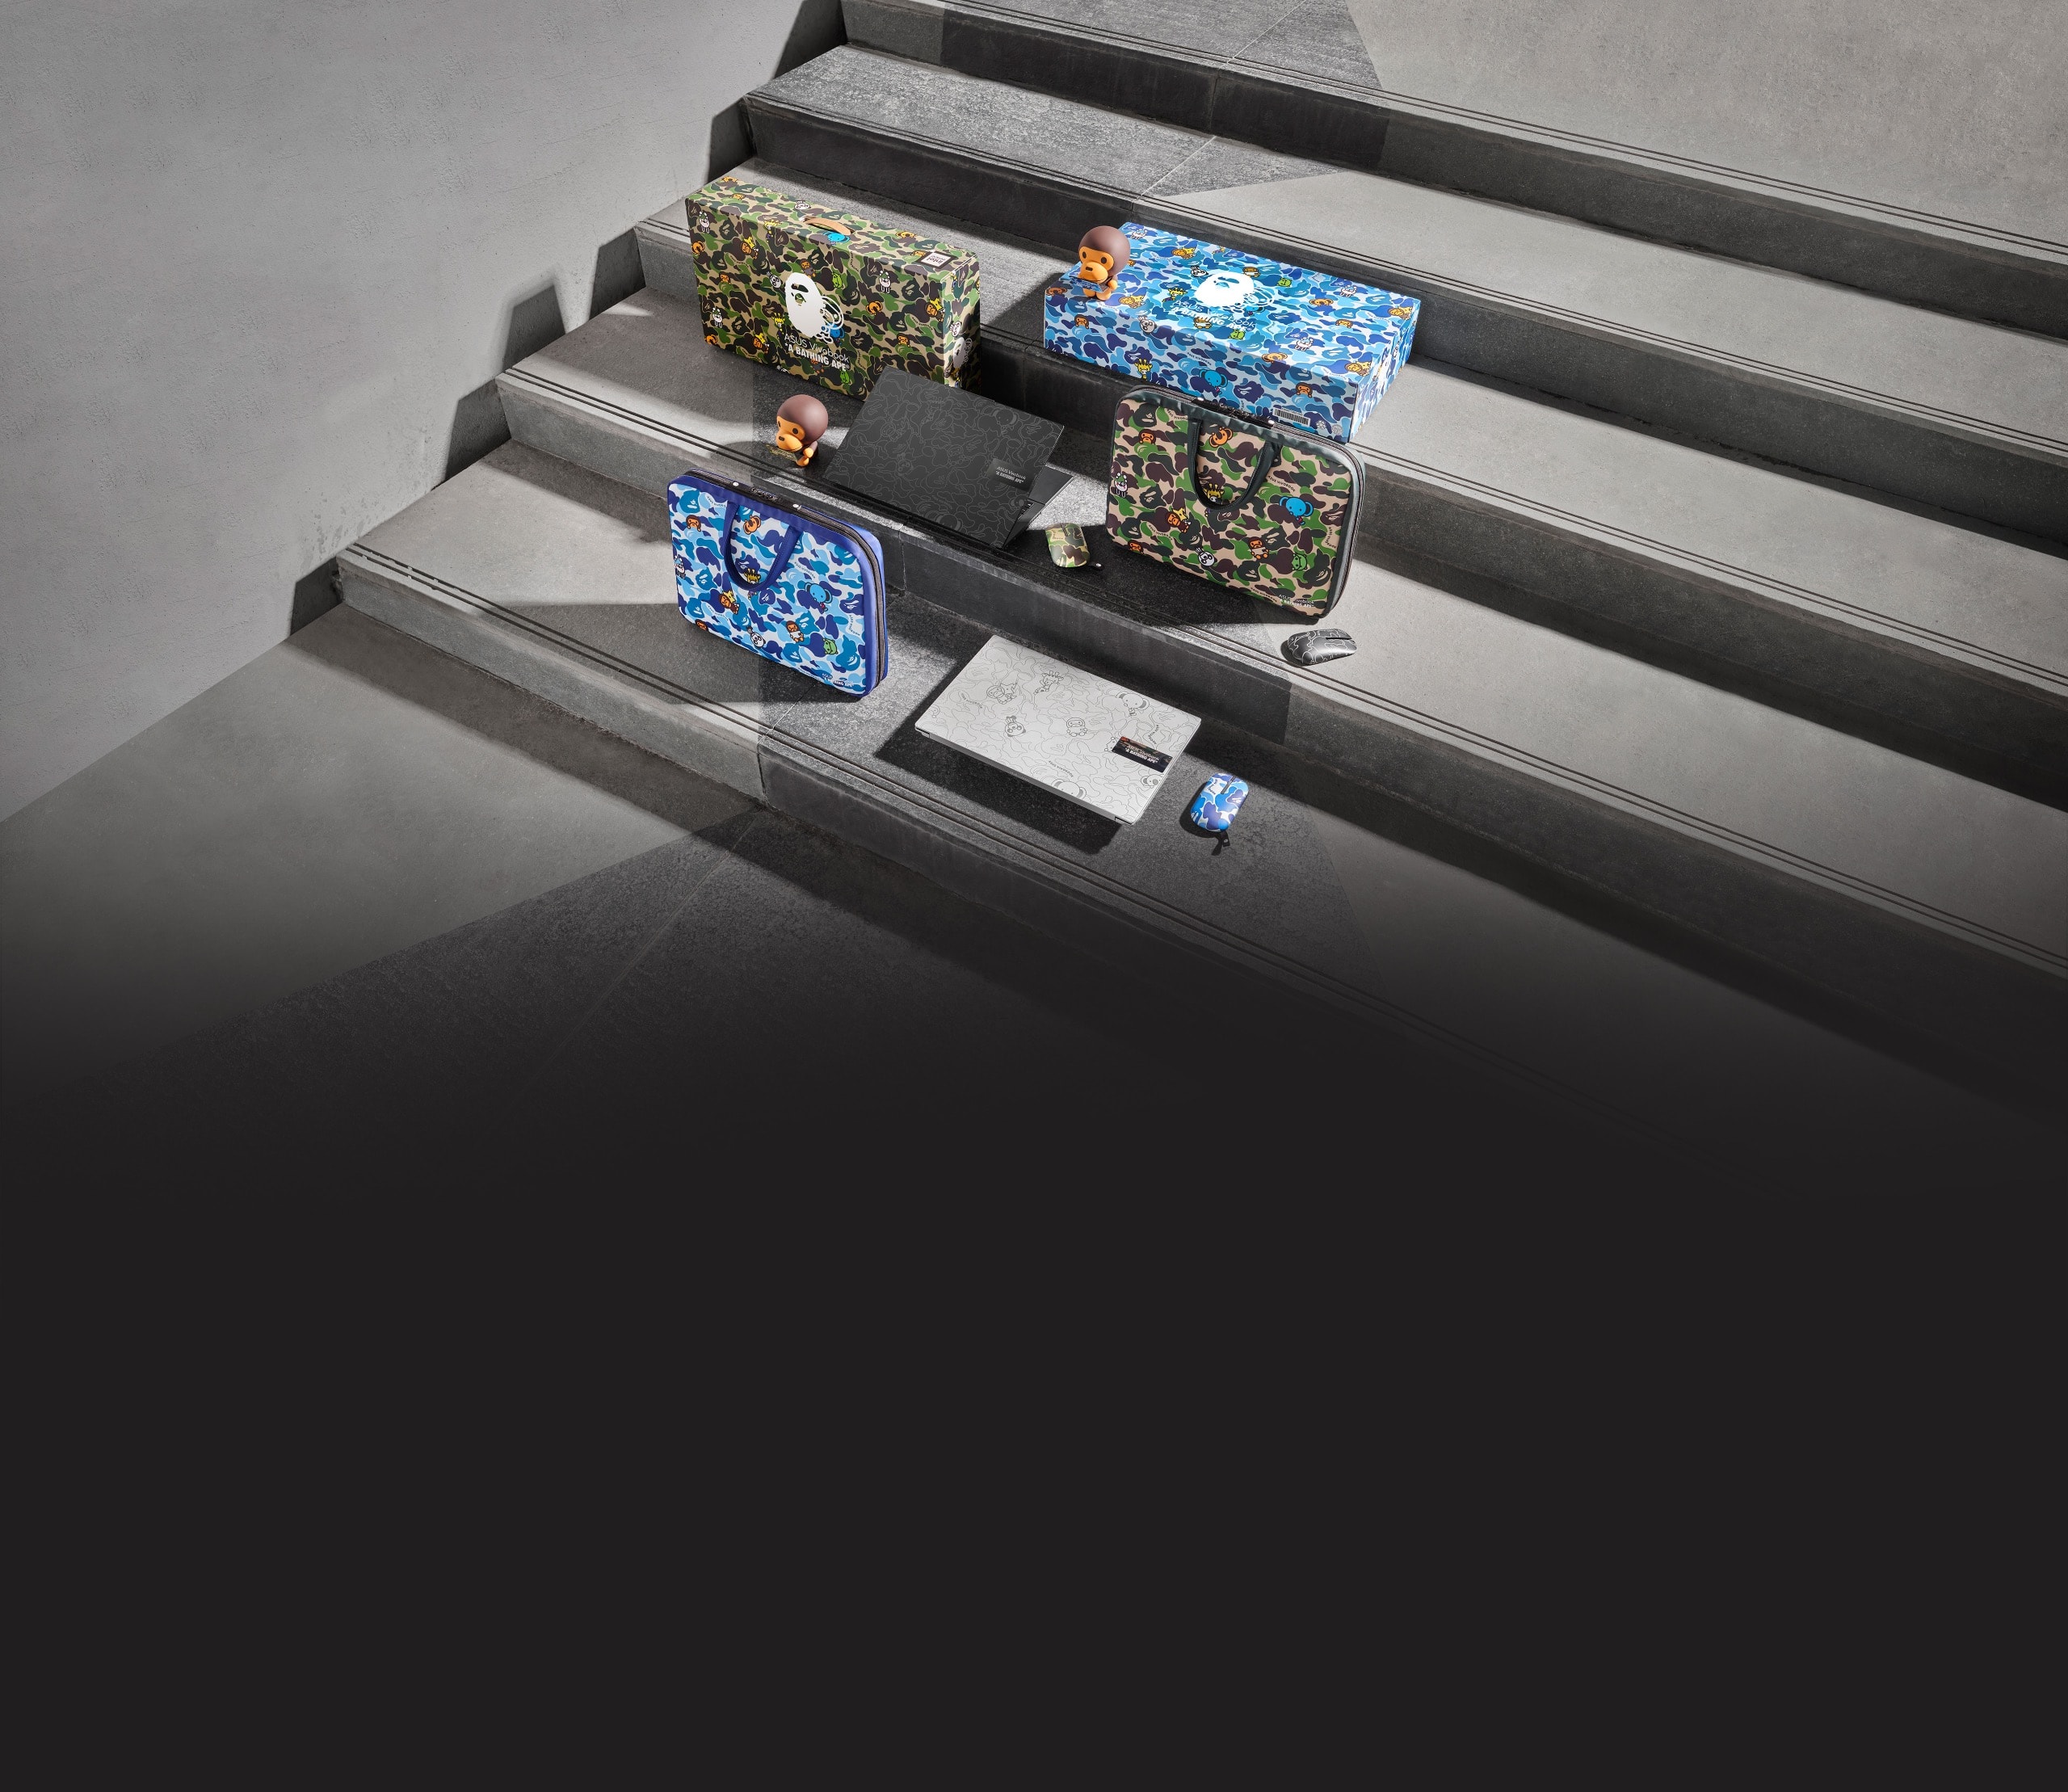 На серых ступеньках показаны комплекты Vivobook BAPE Edition синего и зеленого цветов, включающие в себя ноутбуки, мышки, сумки и подарочные коробки